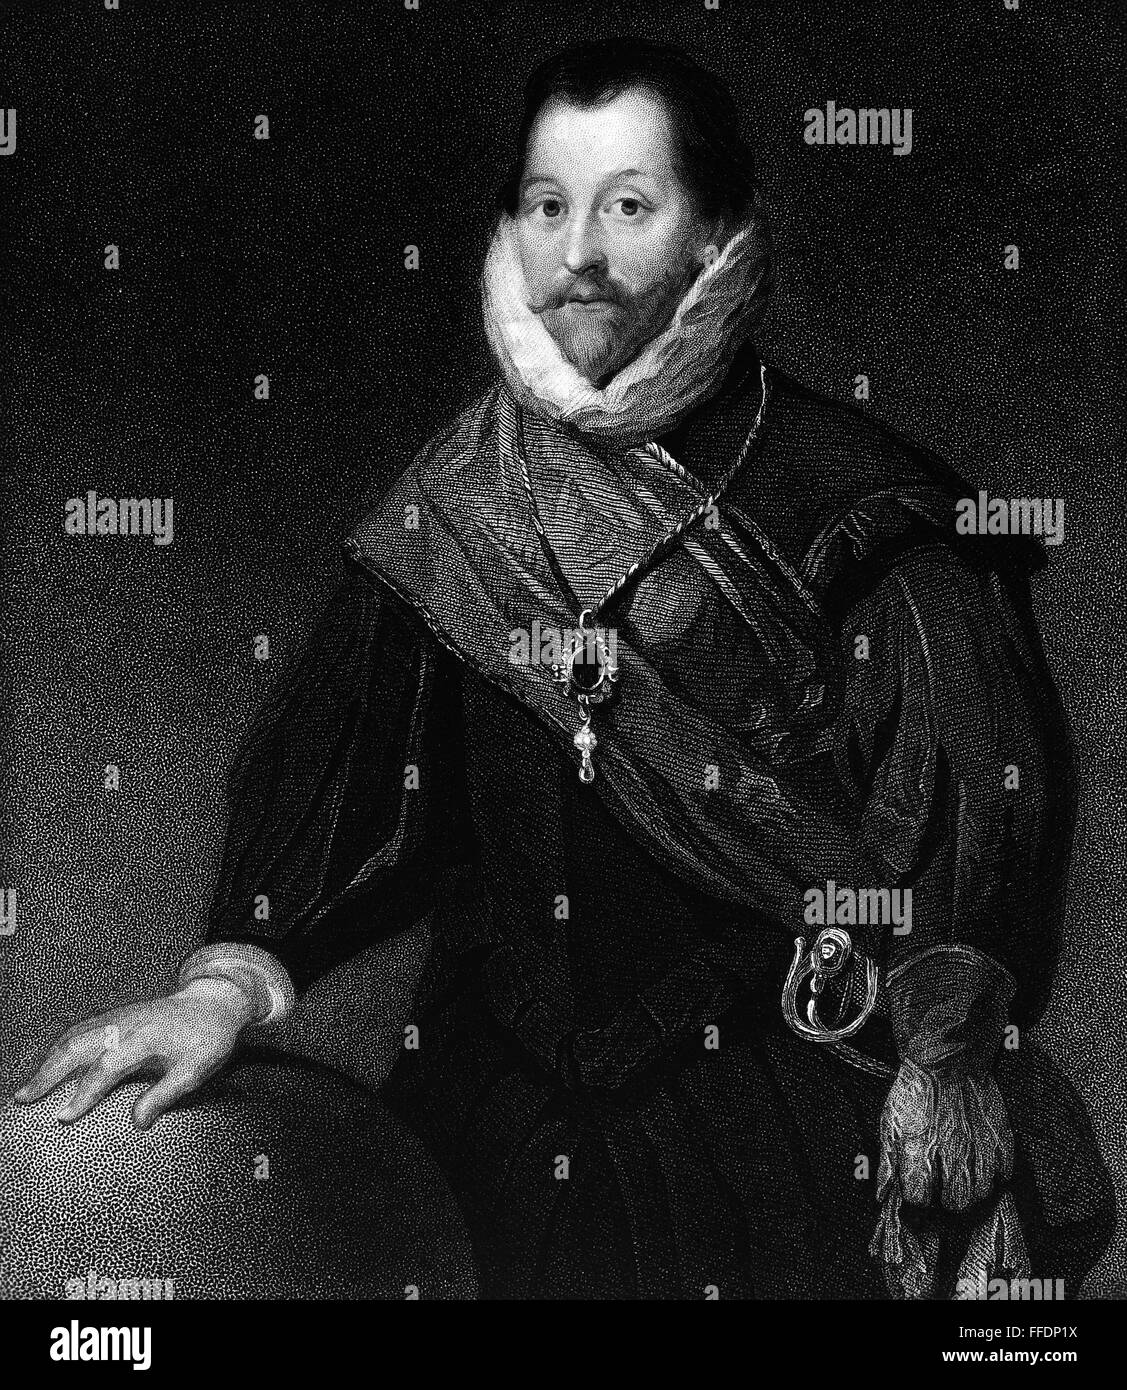 SIR FRANCIS DRAKE /n(c1540-1596). English admiral and navigator. Undated aquatint. Stock Photo